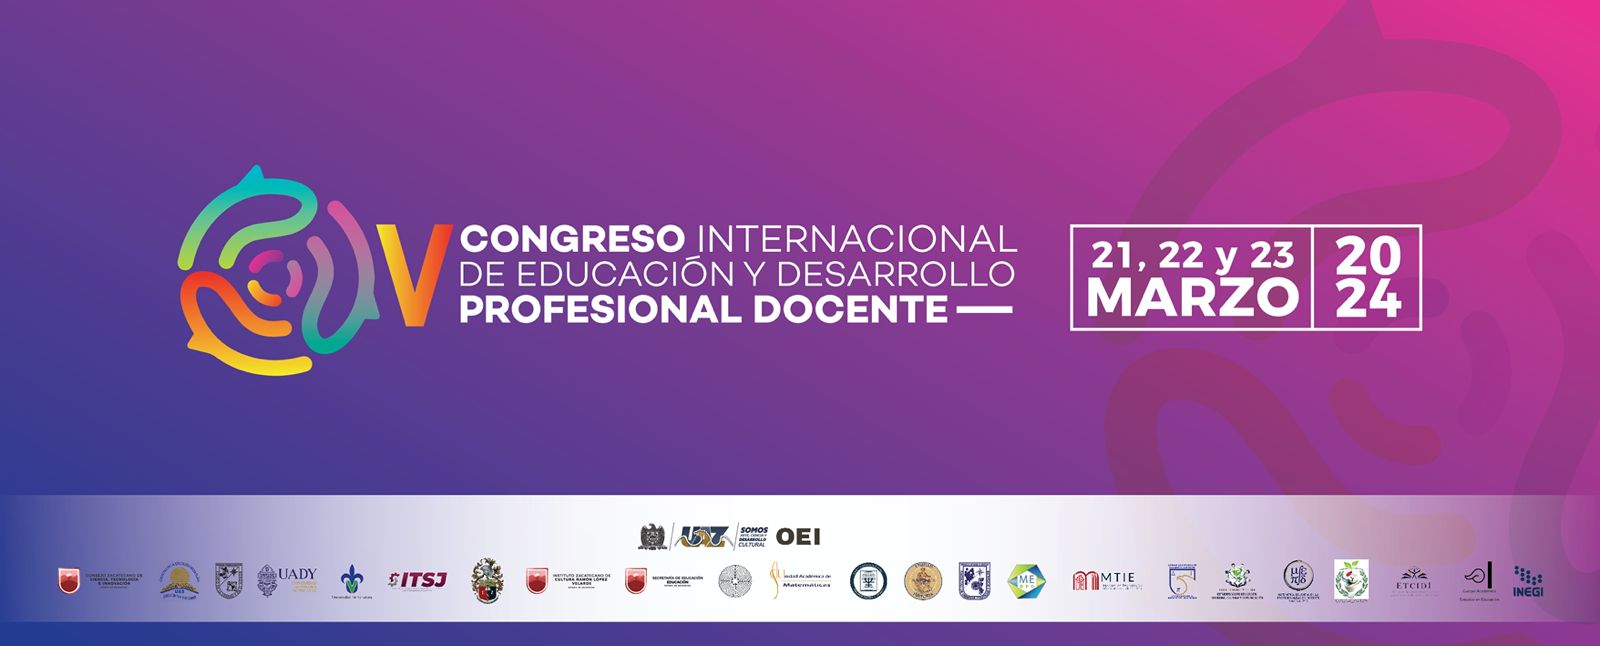 Se abre la convocatoria para participar en el V Congreso Internacional de Educación y Desarrollo Profesional Docente